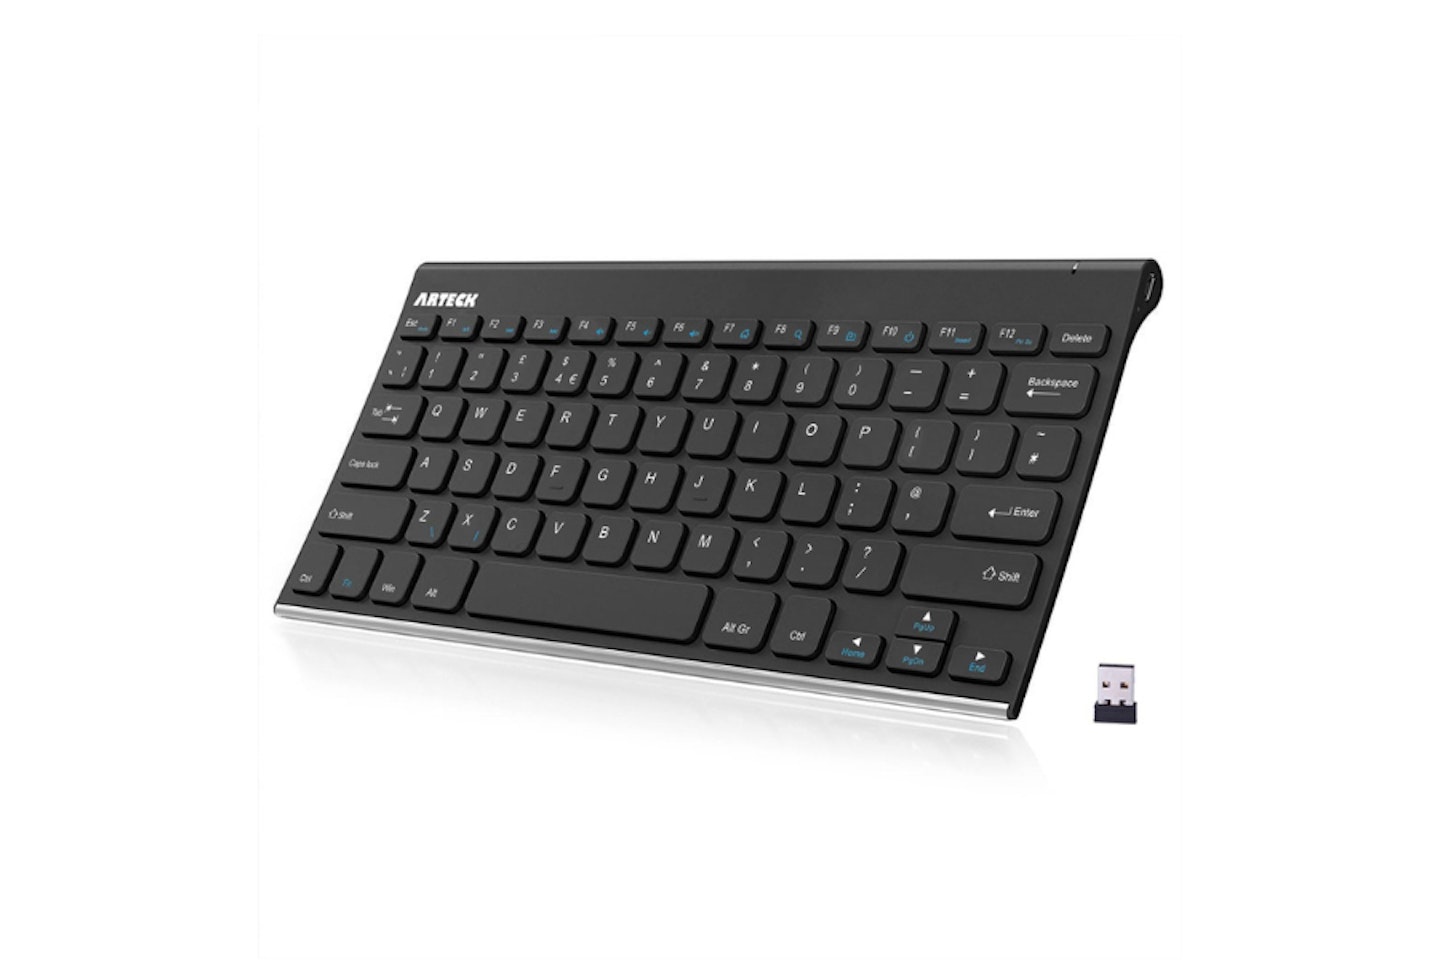 Arteck 2.4G Wireless Keyboard Stainless Steel Ultra Slim Full-Size Keyboard